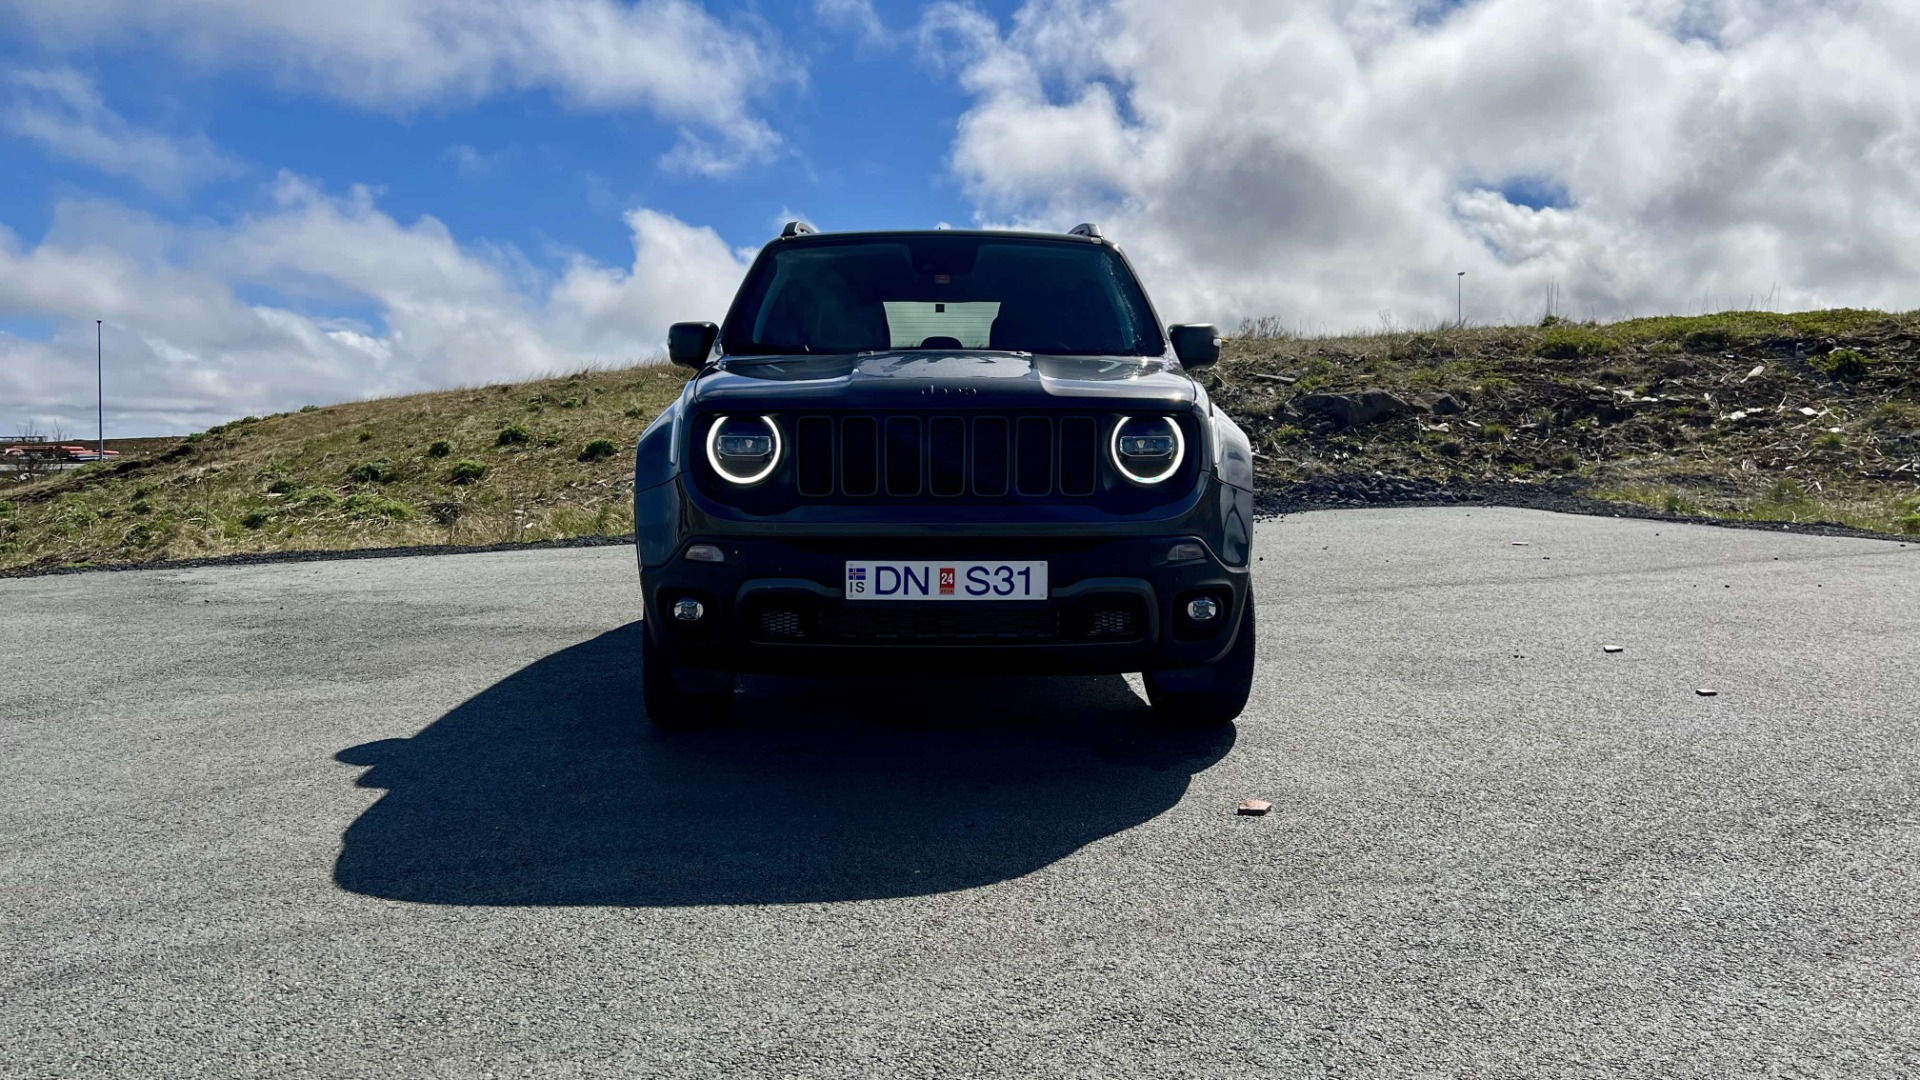 4x4 Rental Iceland | Lotus Car Rental